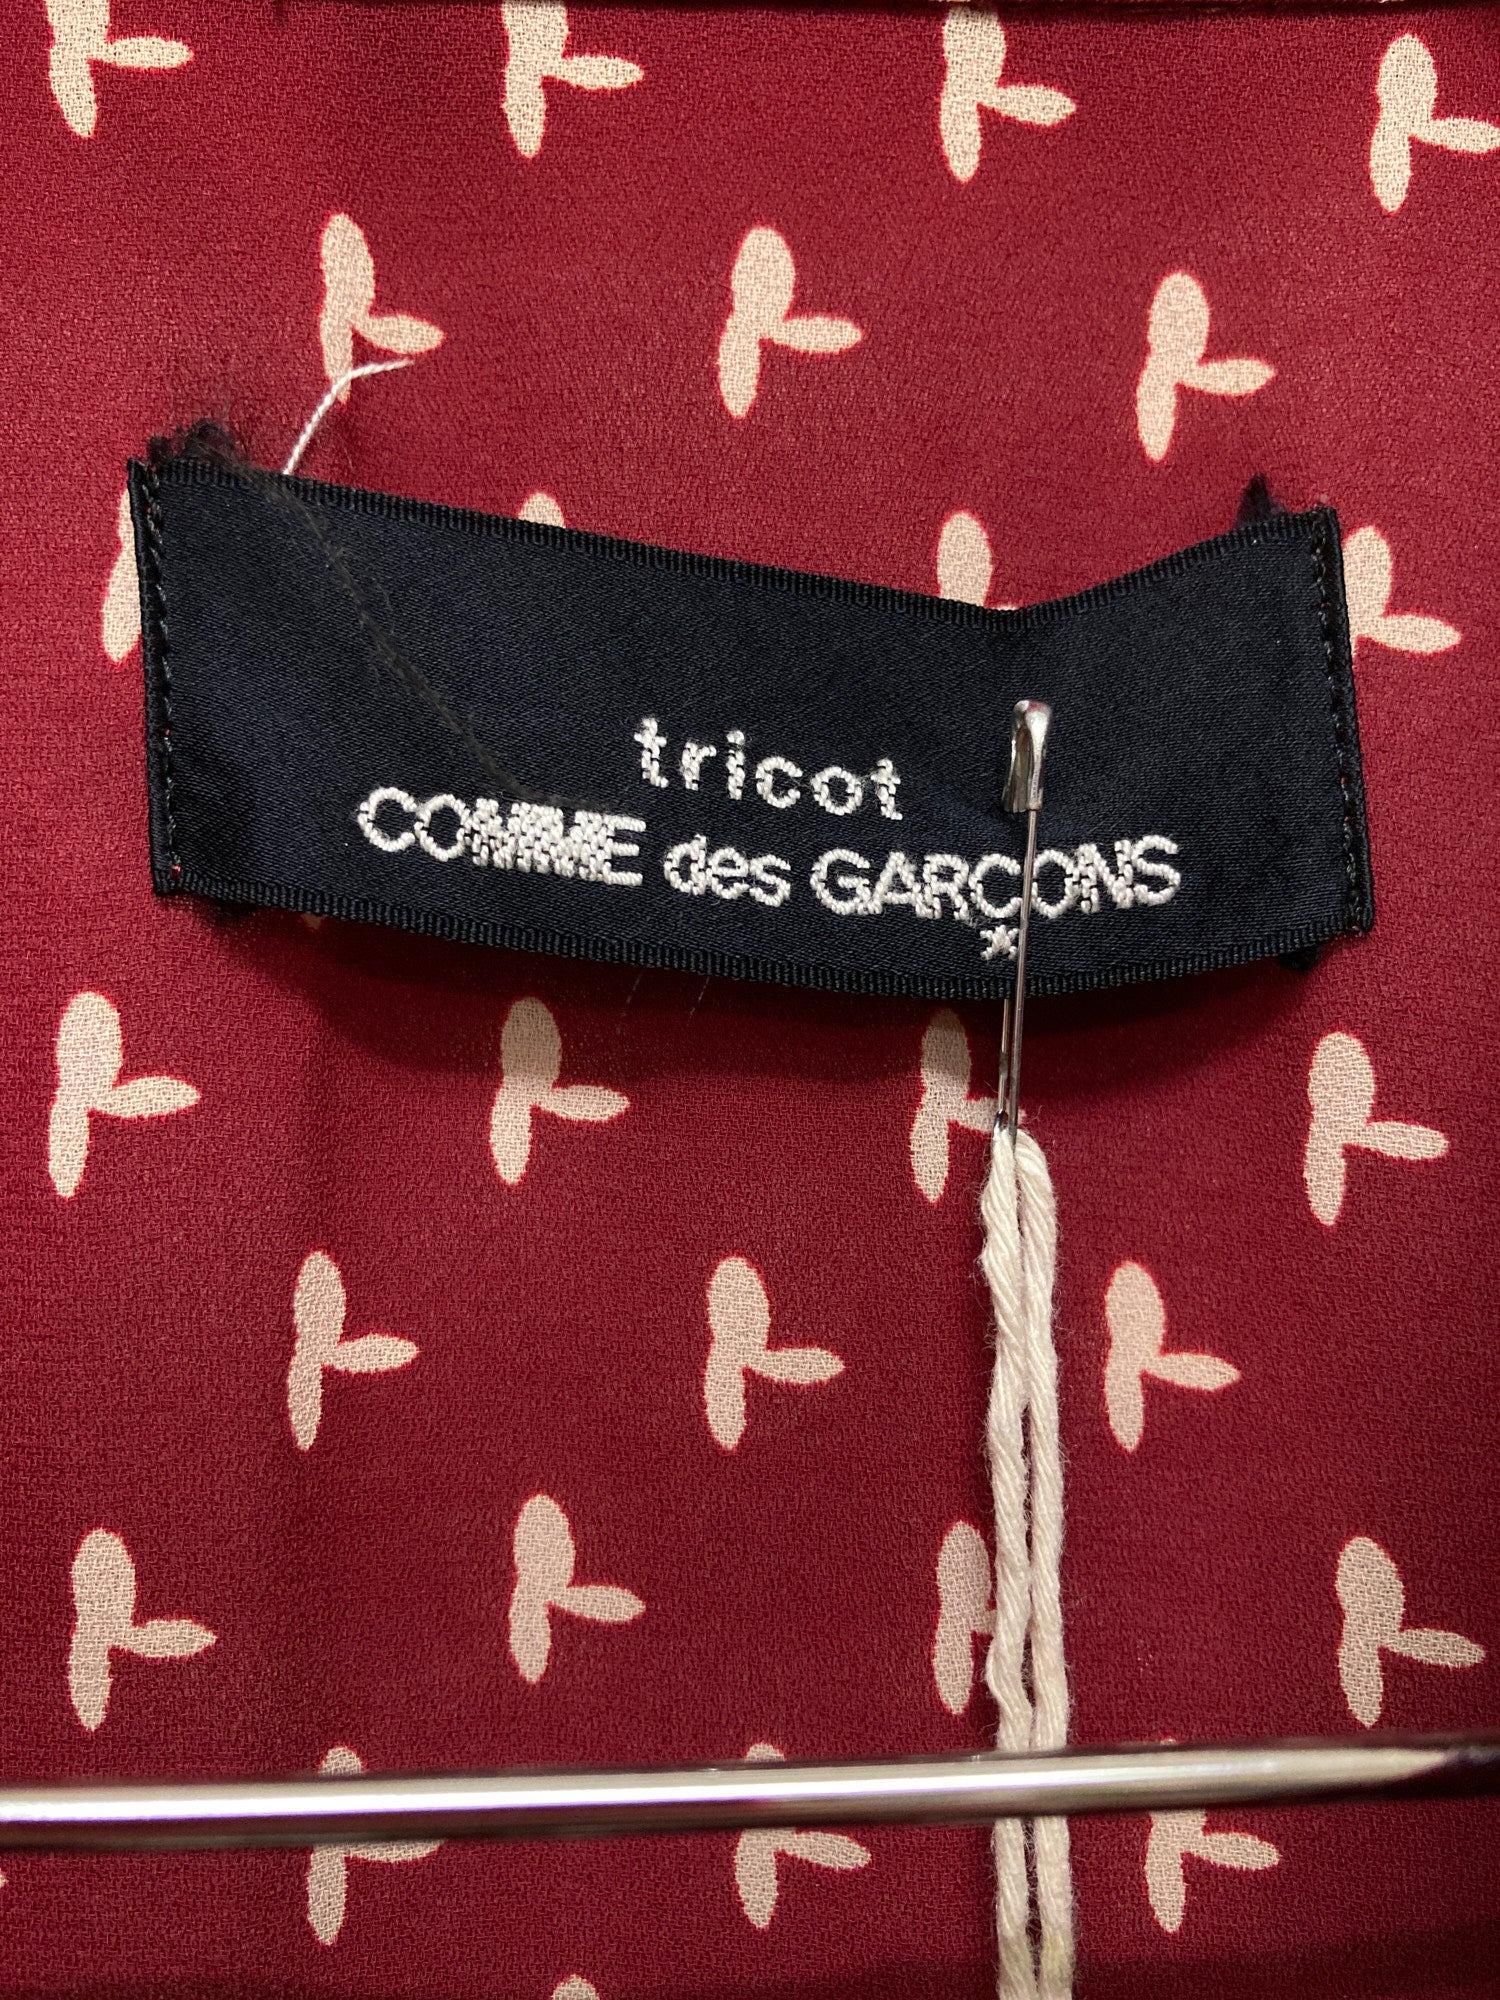 Tricot Comme des Garcons 1994 burgundy floral print batwing jacket skirt suit